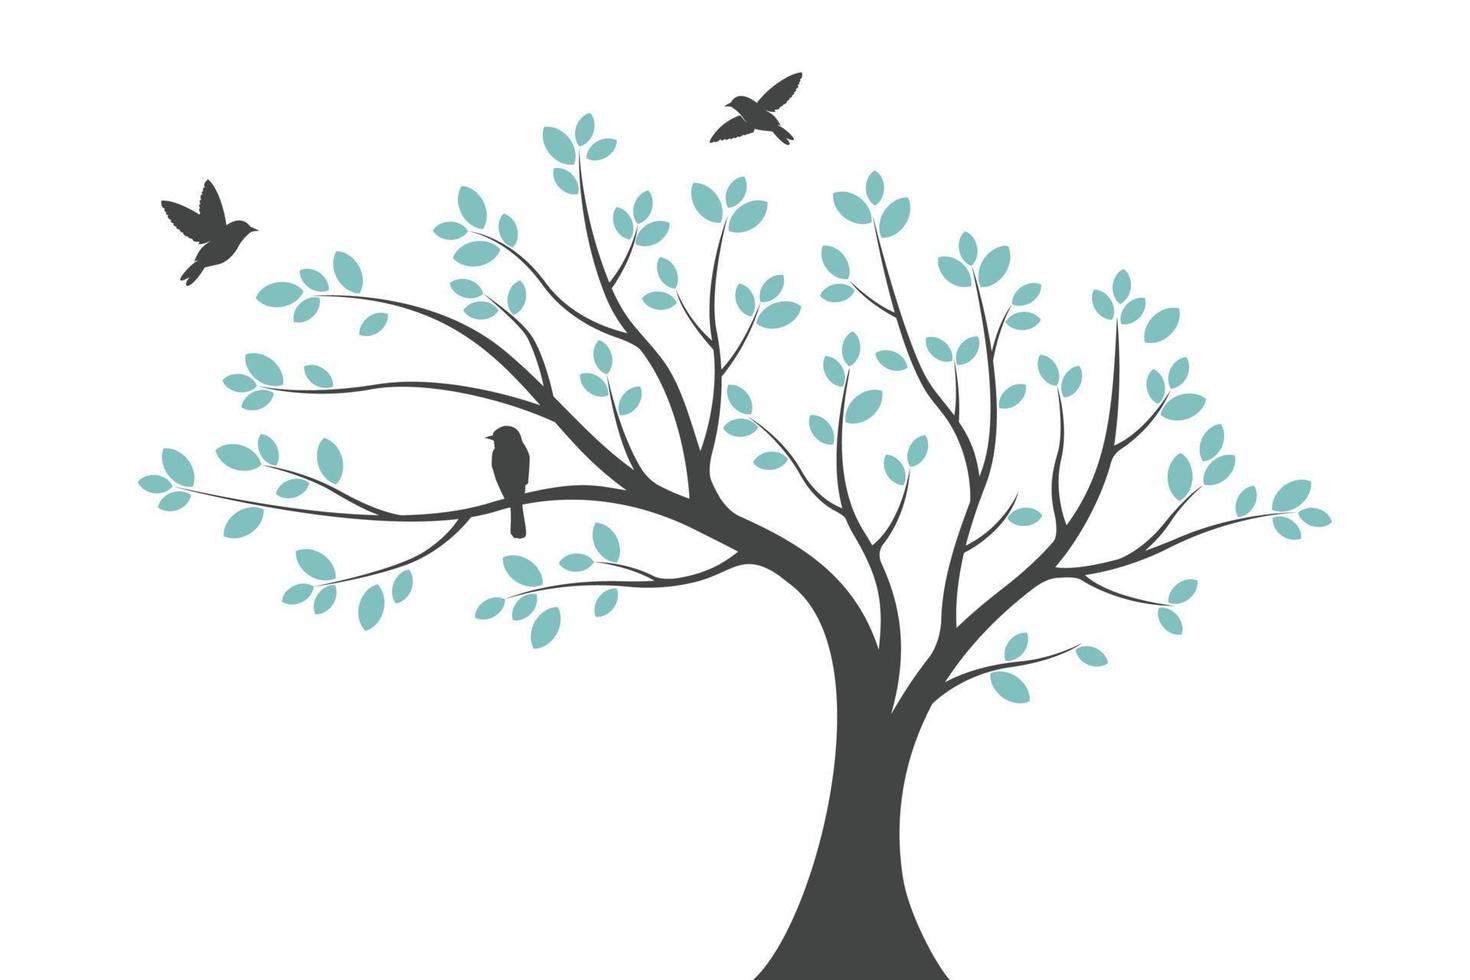 concept de décoration murale arbre. oiseau sur branche décoration murale design autocollant illustration vectorielle vecteur